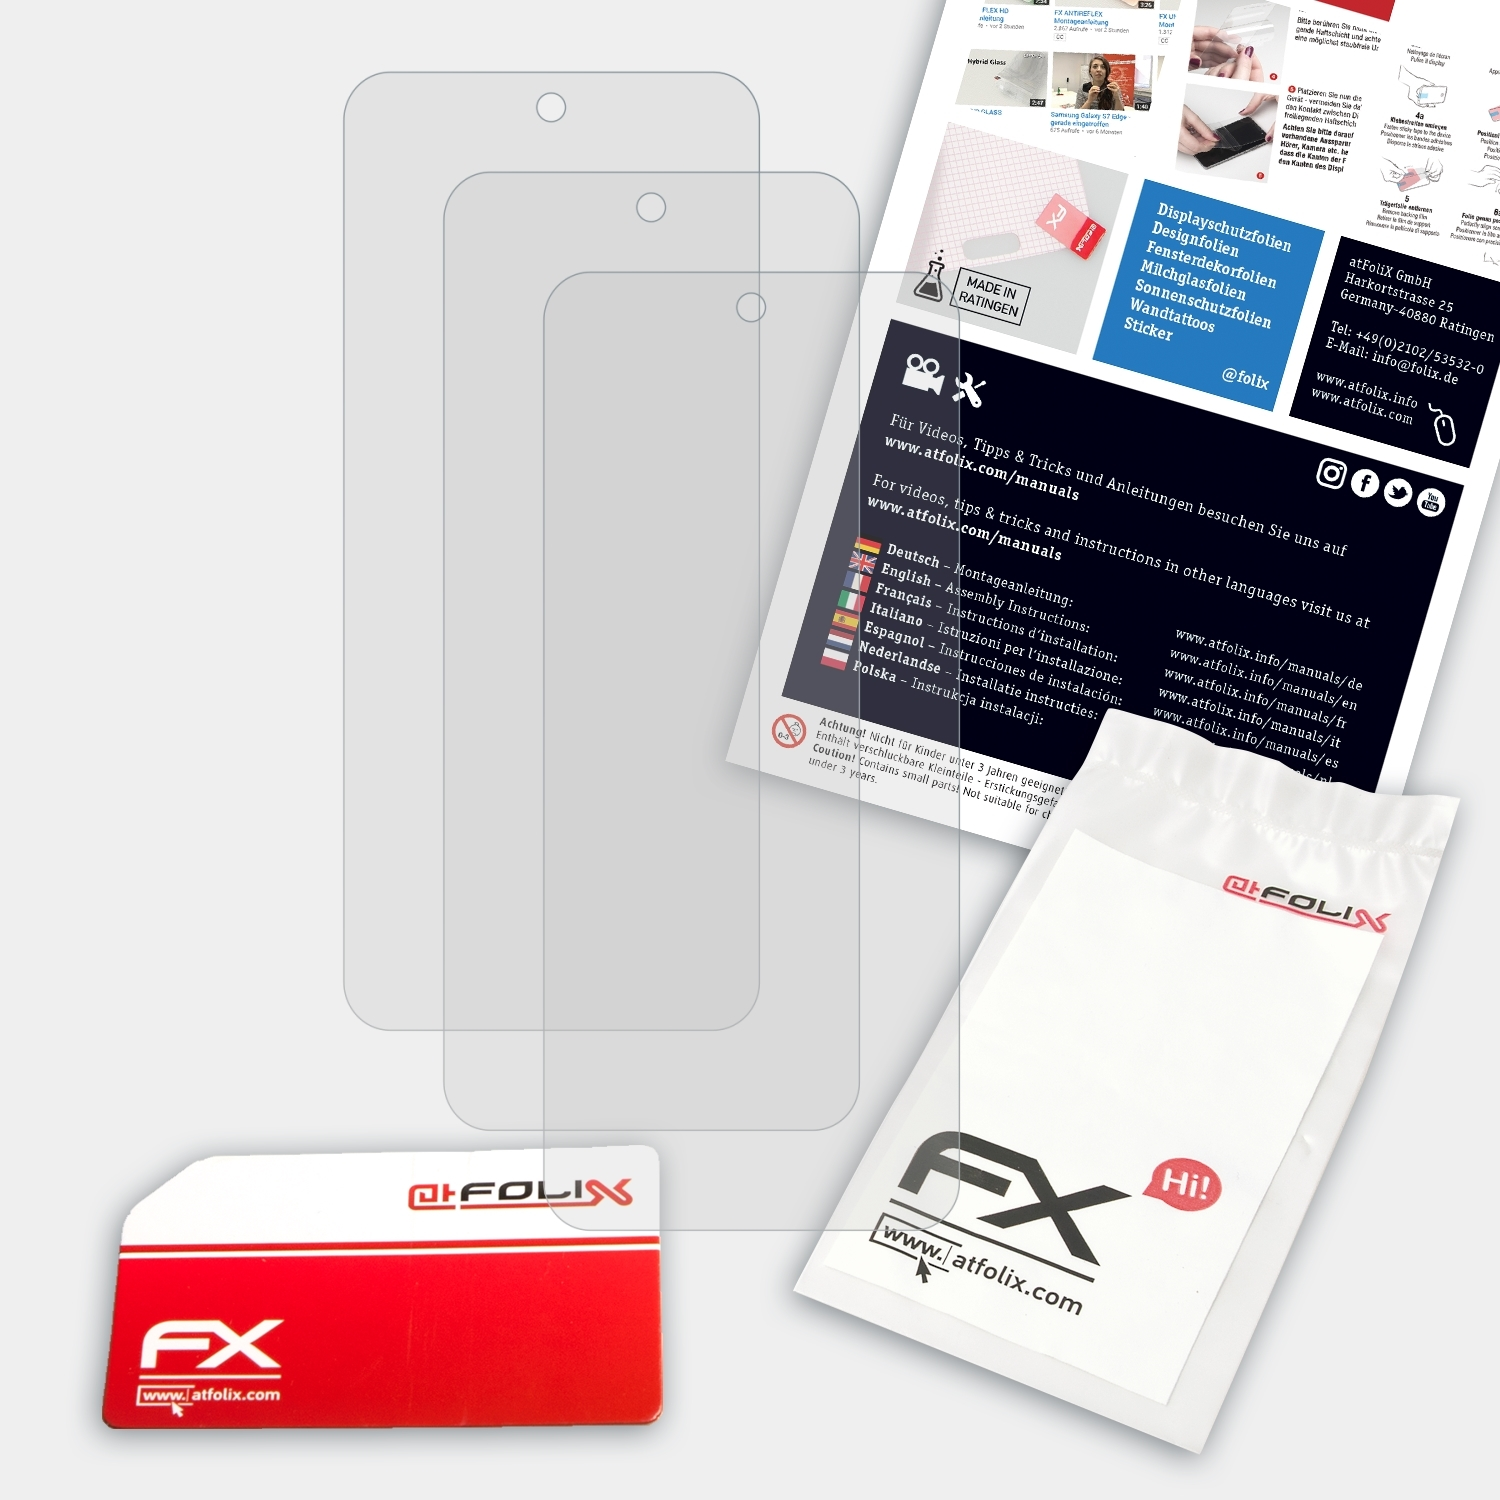 ATFOLIX 3x Displayschutz(für Moto Motorola FX-Antireflex E30)